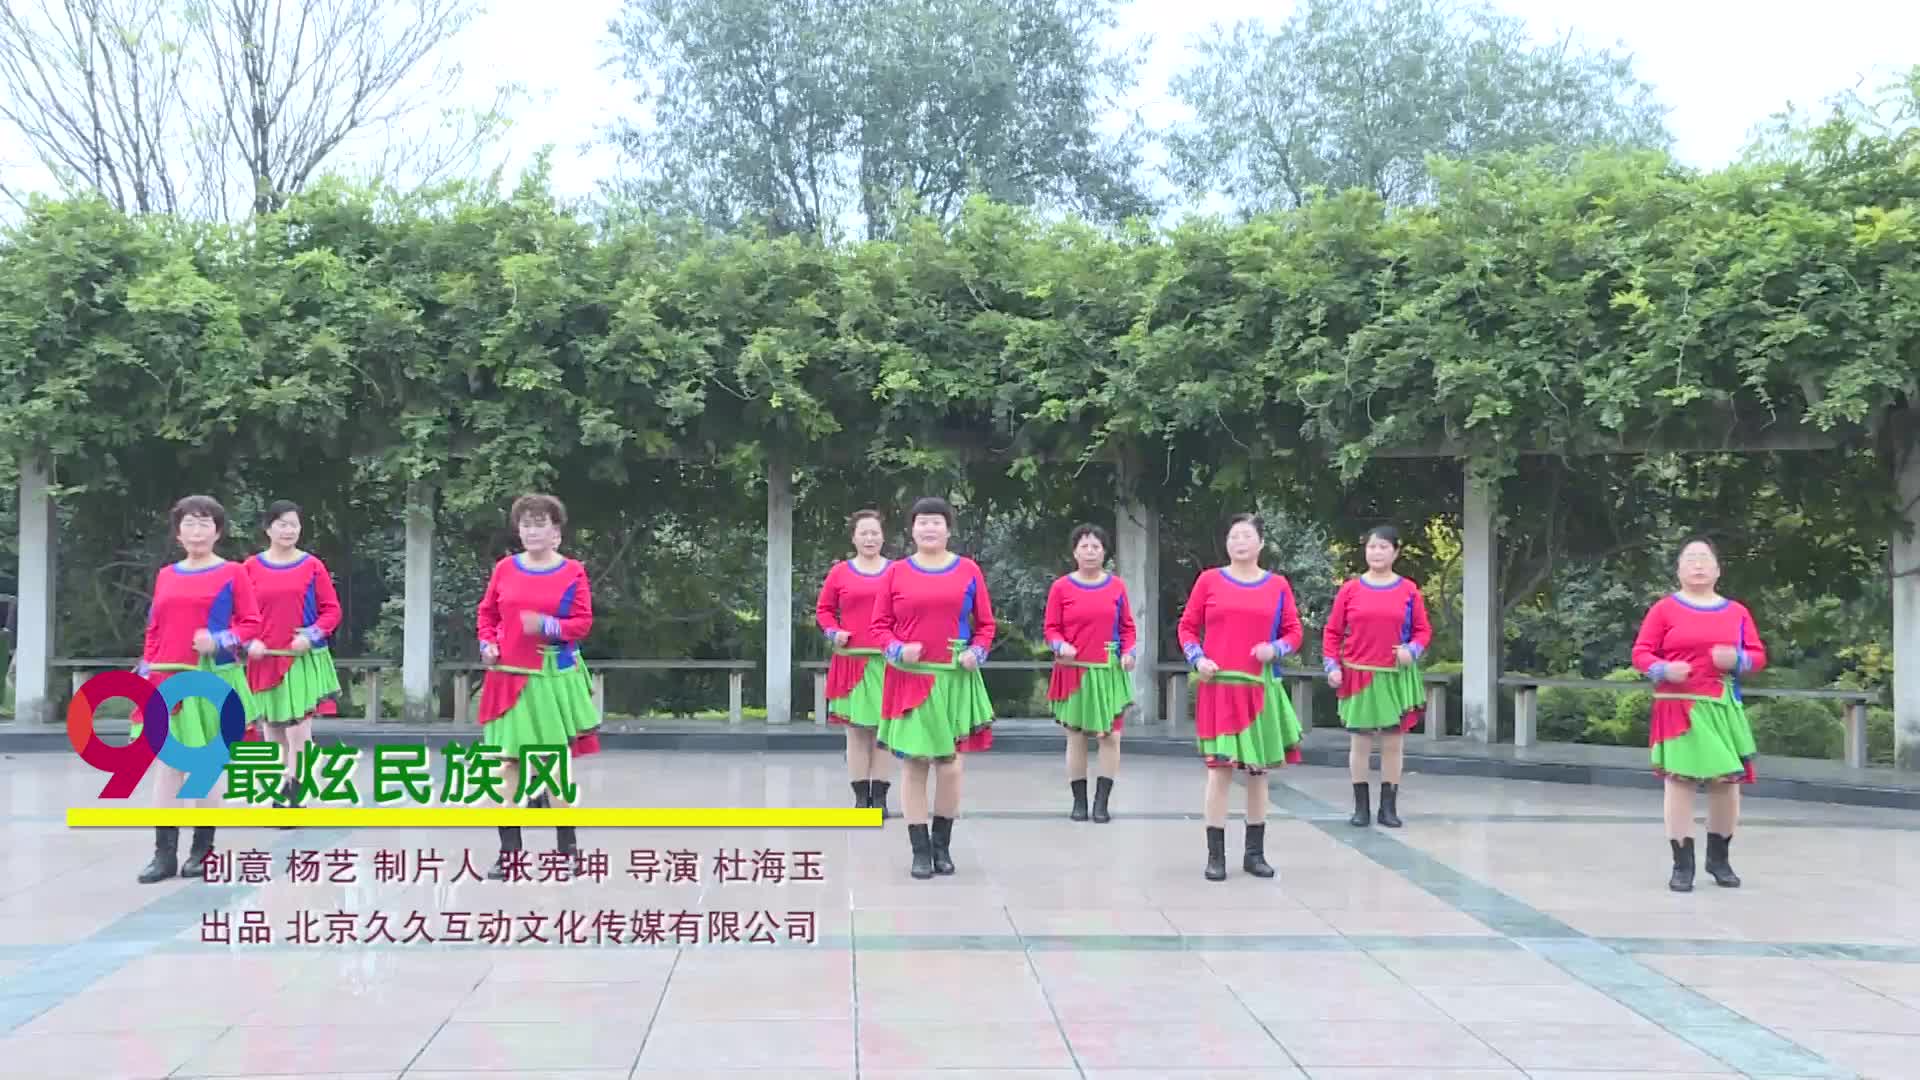 荥阳市广场夕阳美舞蹈三队最炫民族风-团队演示